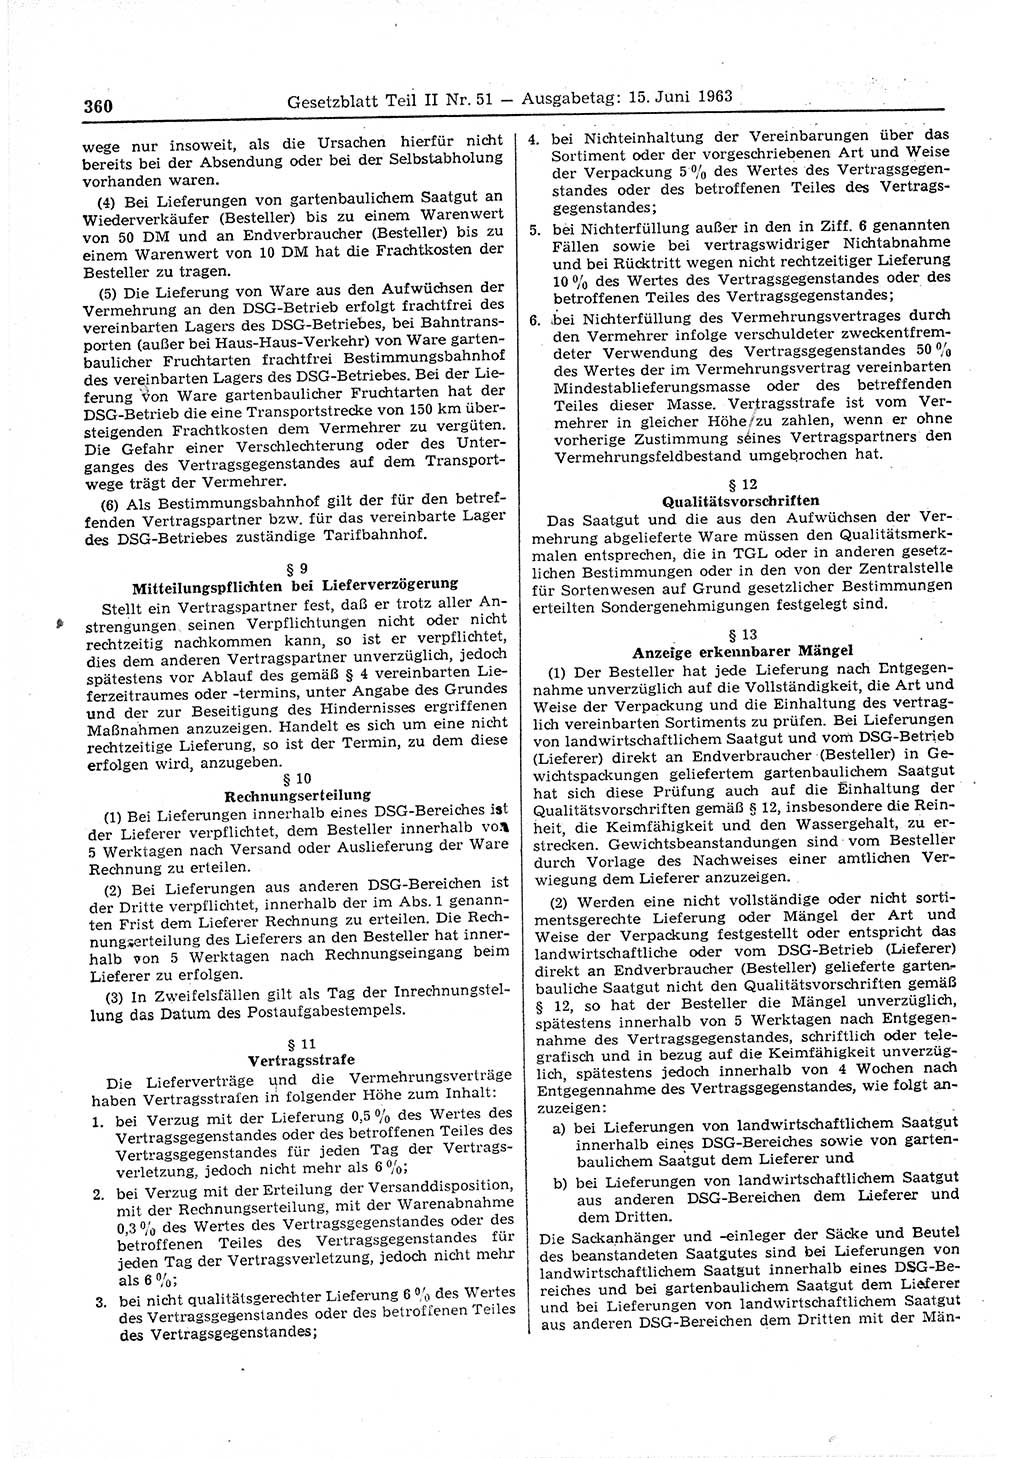 Gesetzblatt (GBl.) der Deutschen Demokratischen Republik (DDR) Teil ⅠⅠ 1963, Seite 360 (GBl. DDR ⅠⅠ 1963, S. 360)